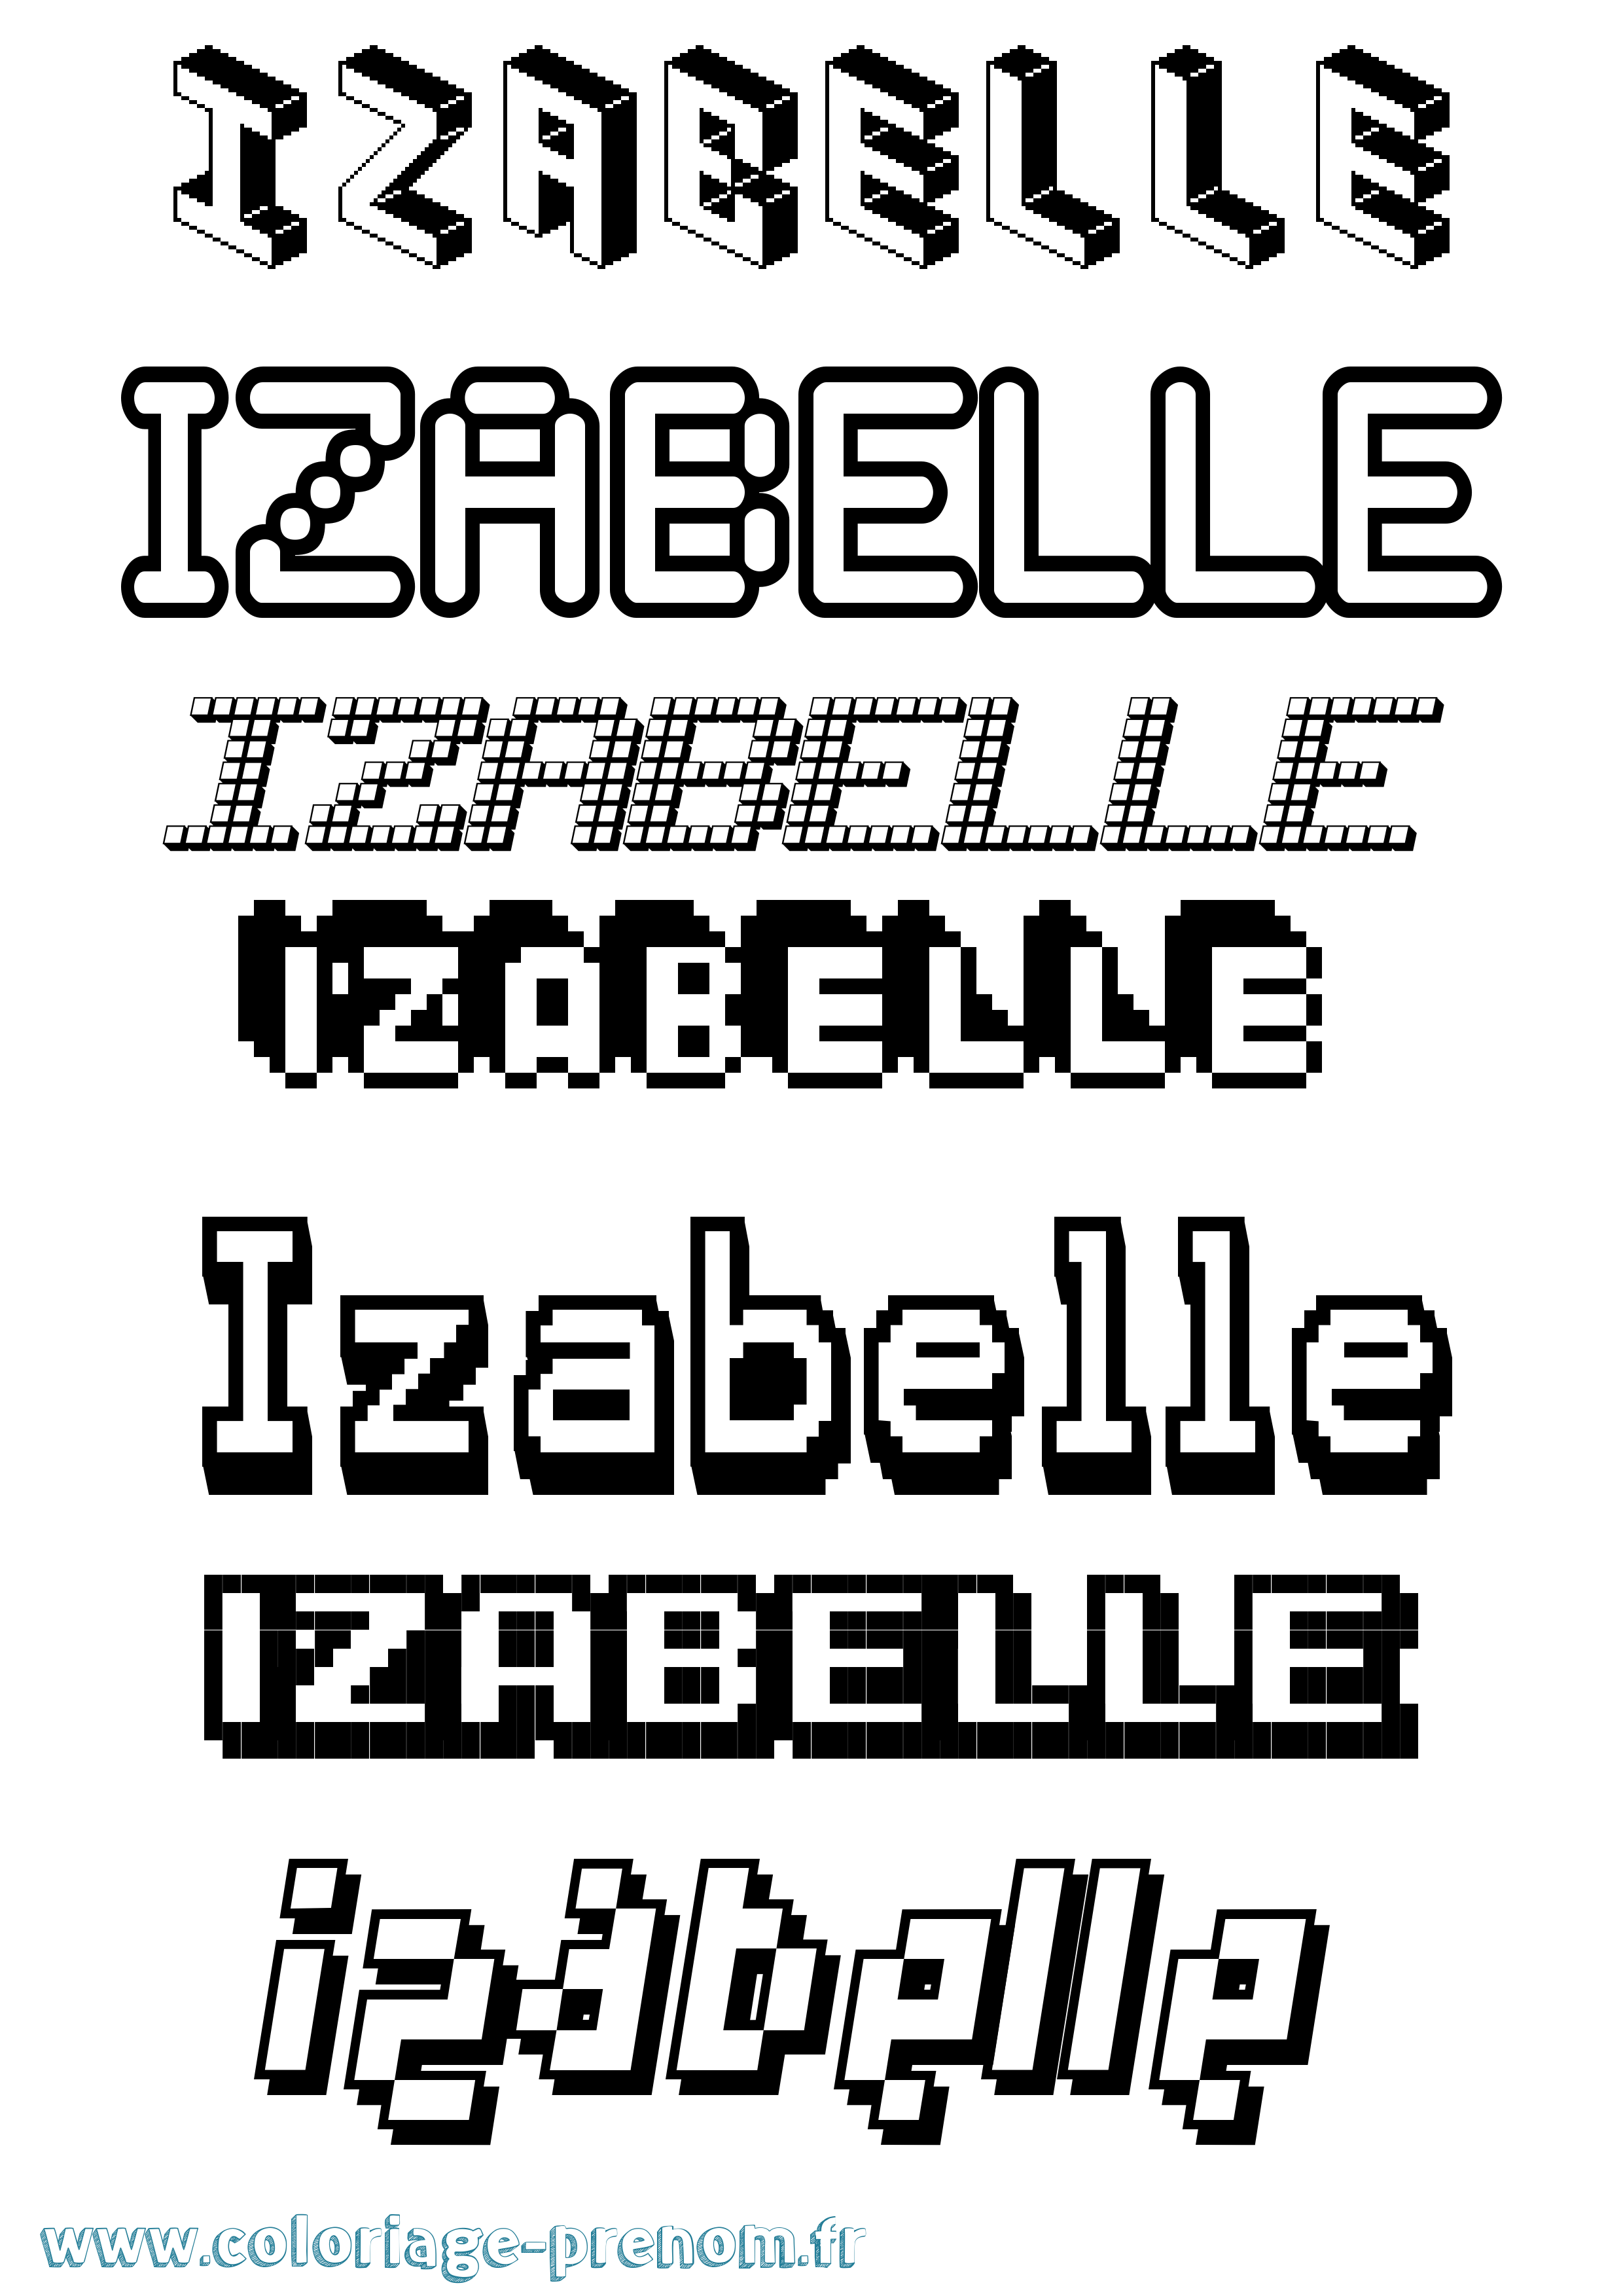 Coloriage prénom Izabelle Pixel